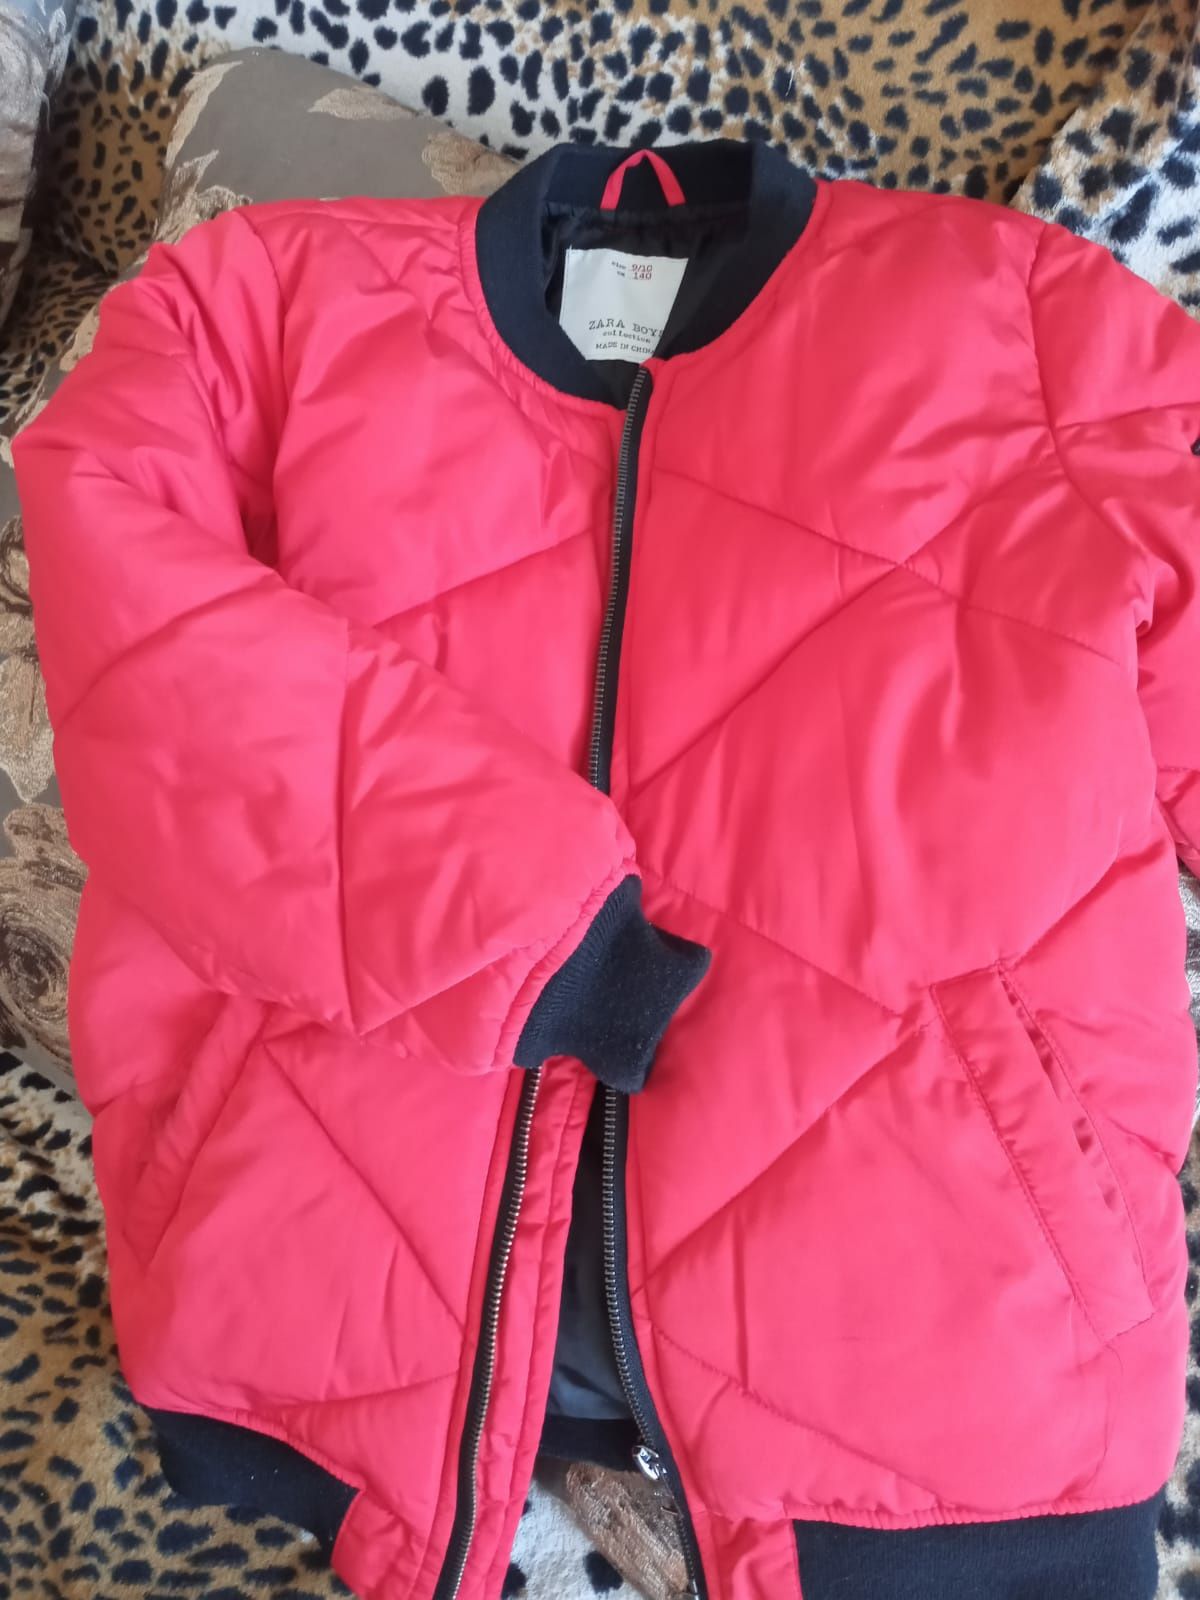 Продам куртки зима на ребенка 6-8 лет